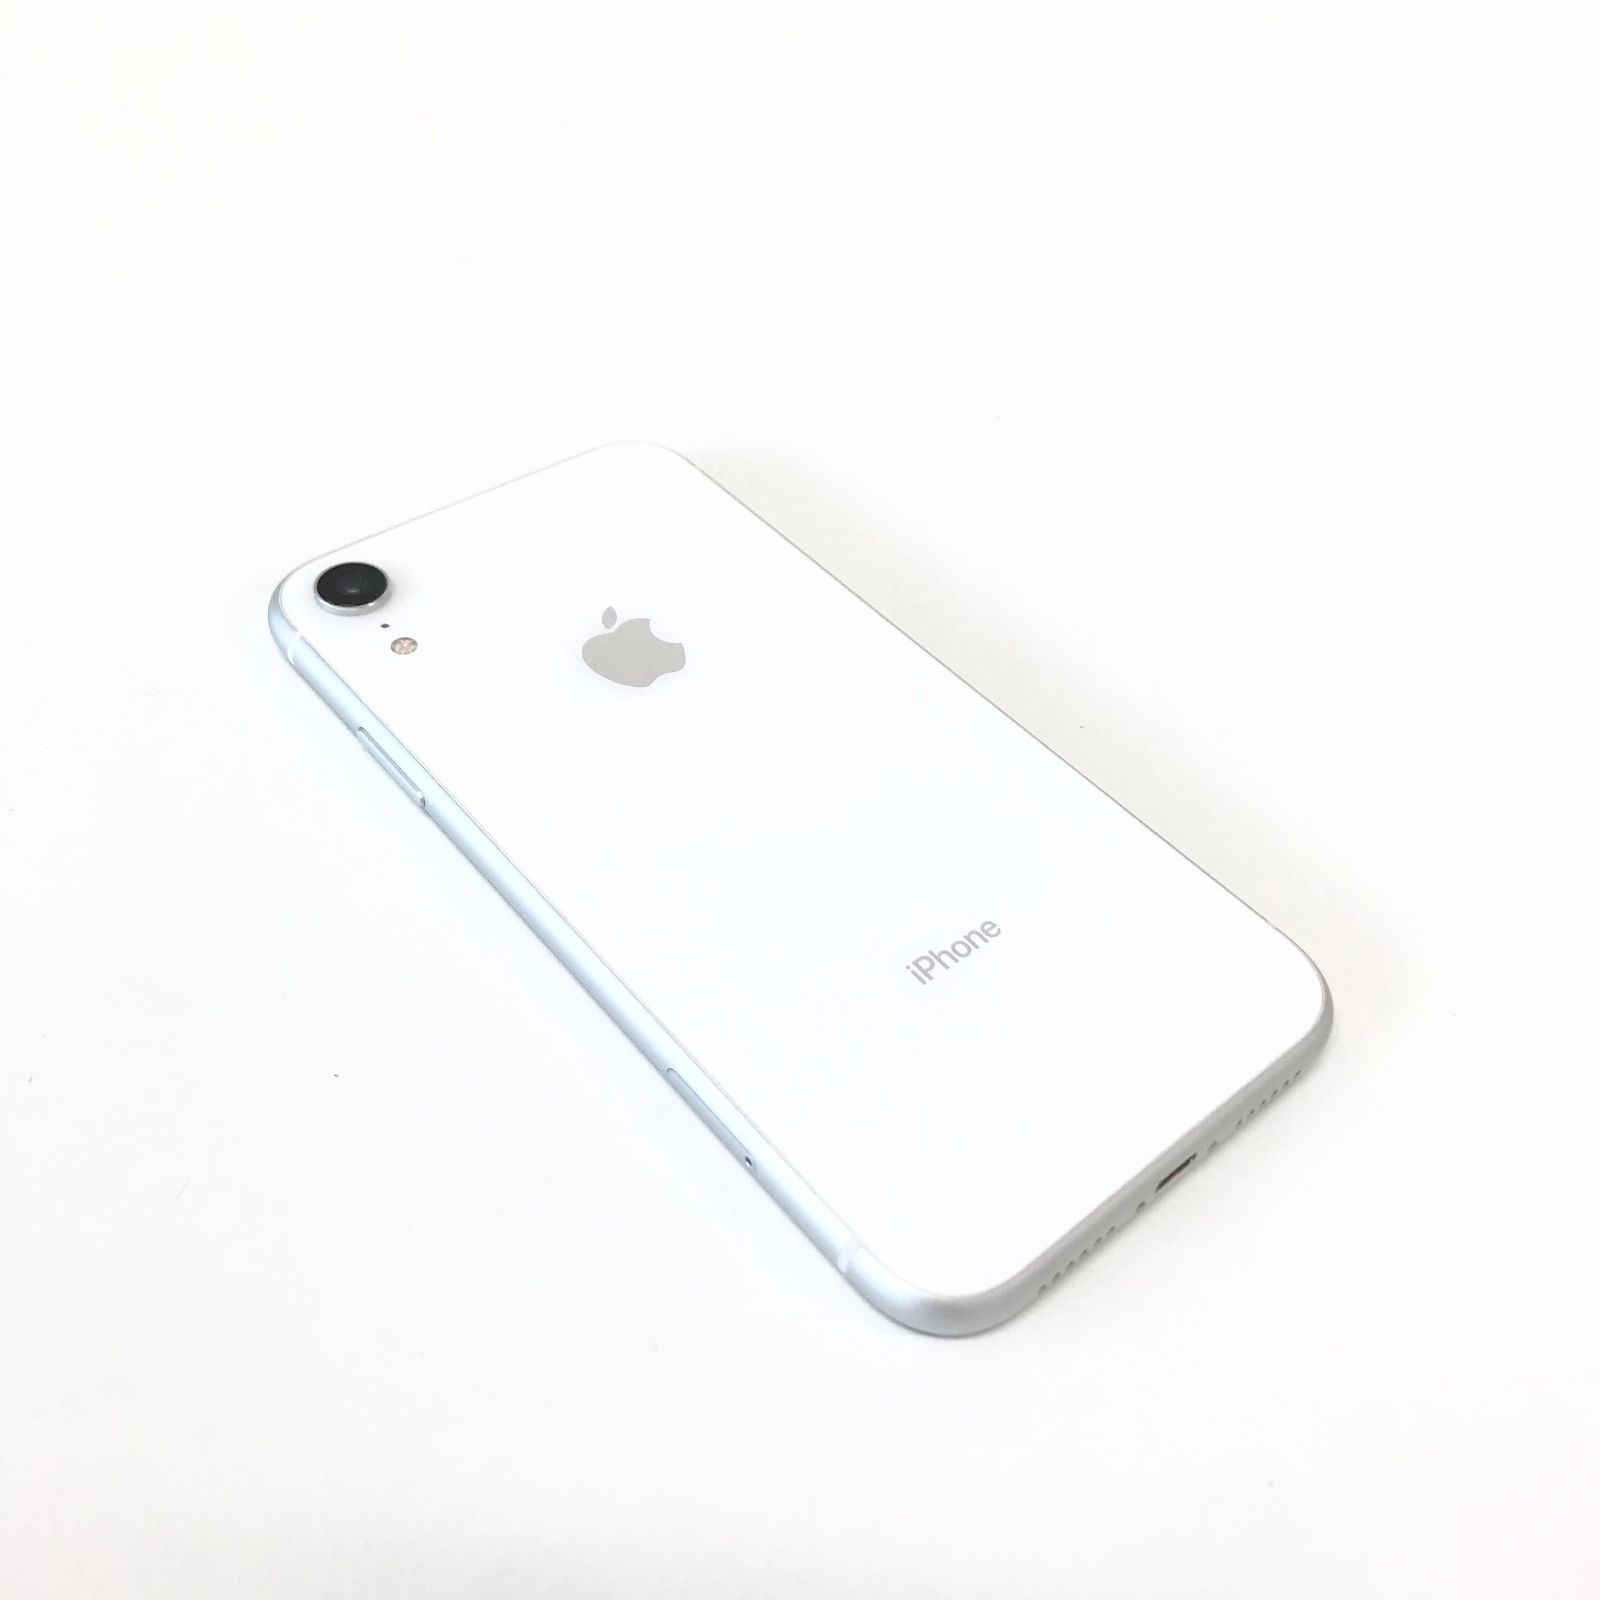 θ【SIMロック解除済み】iPhone XR 64GB ホワイト - メルカリ